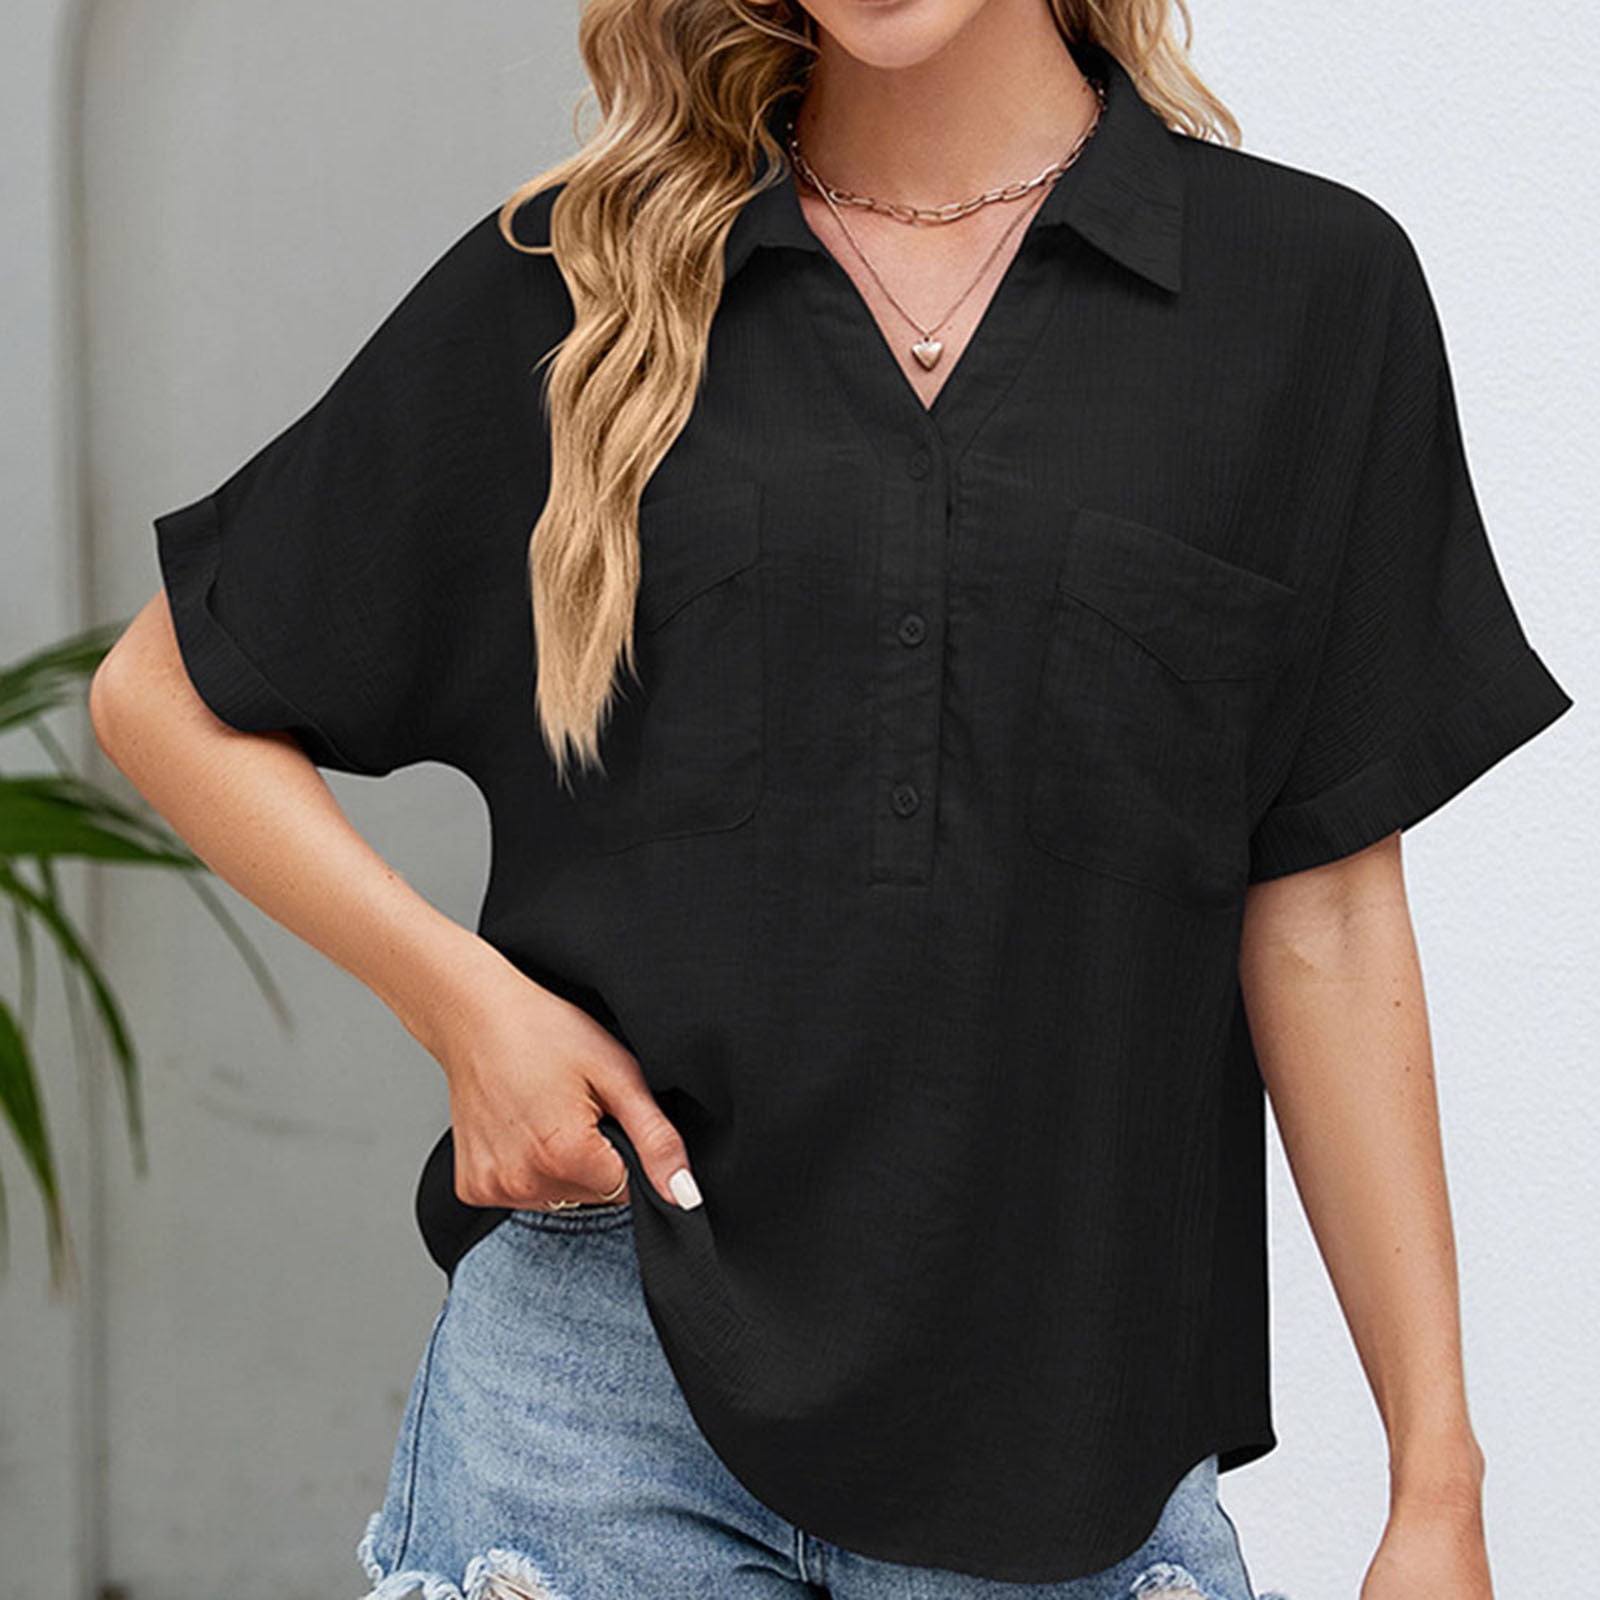 Aueoeo Cute T Shirts for Women, Women's Cotton Linen Shirt Short Sleeve  Button Up Pocket V-Neck T-Shirt Short Sleeve Lapel Top 